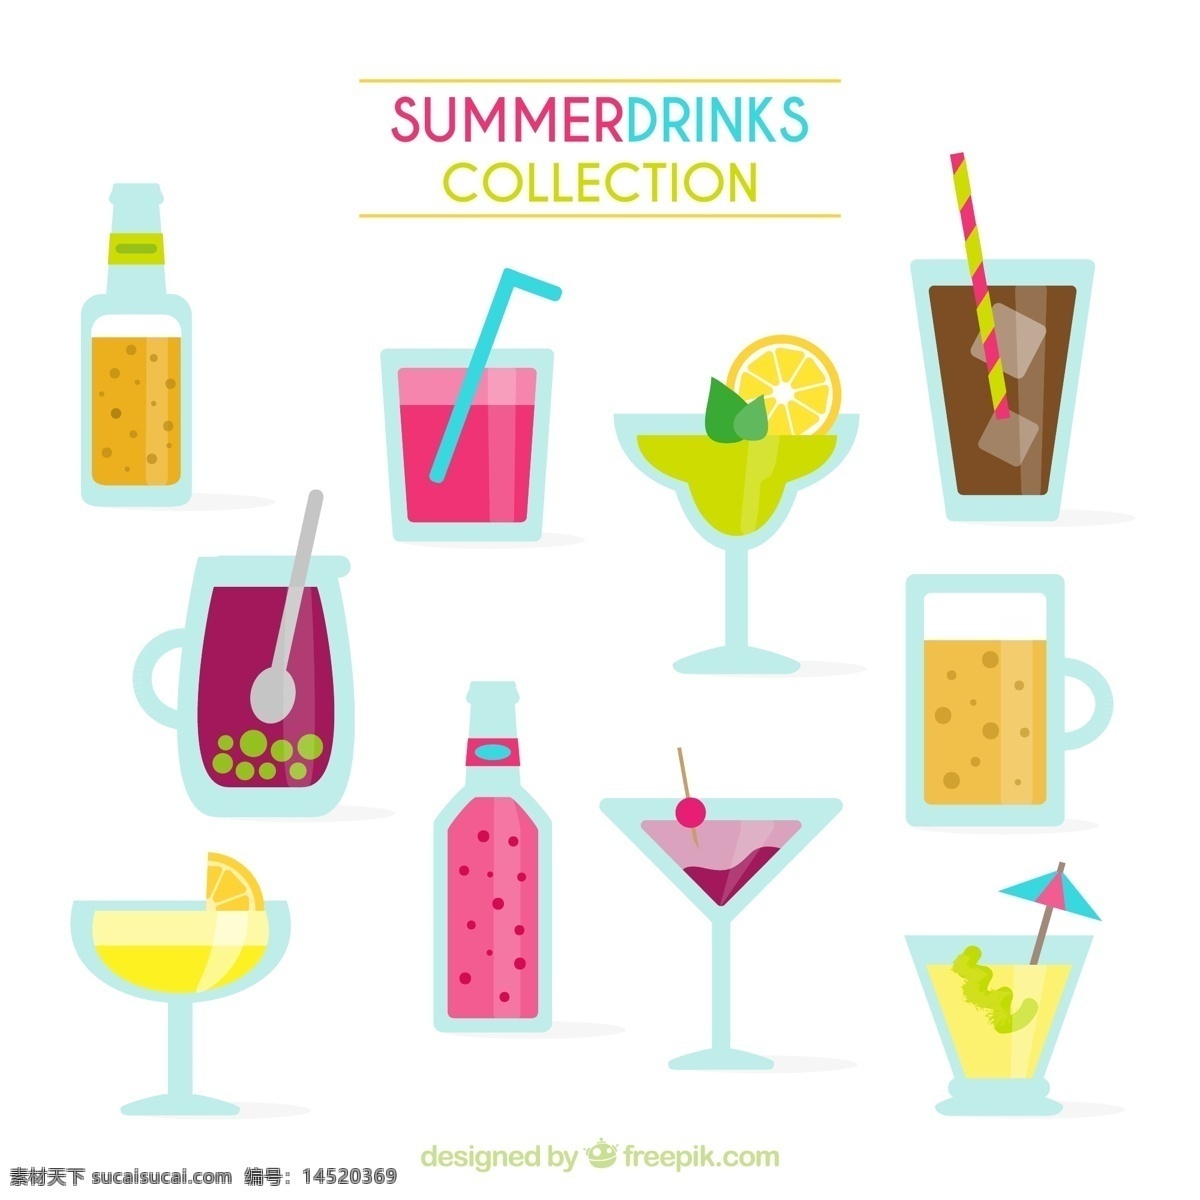 夏季饮品表情 矢量素材 表情 夏季 饮品 饮料 咖啡 果汁 矢量图 ai格式 广告设计素材